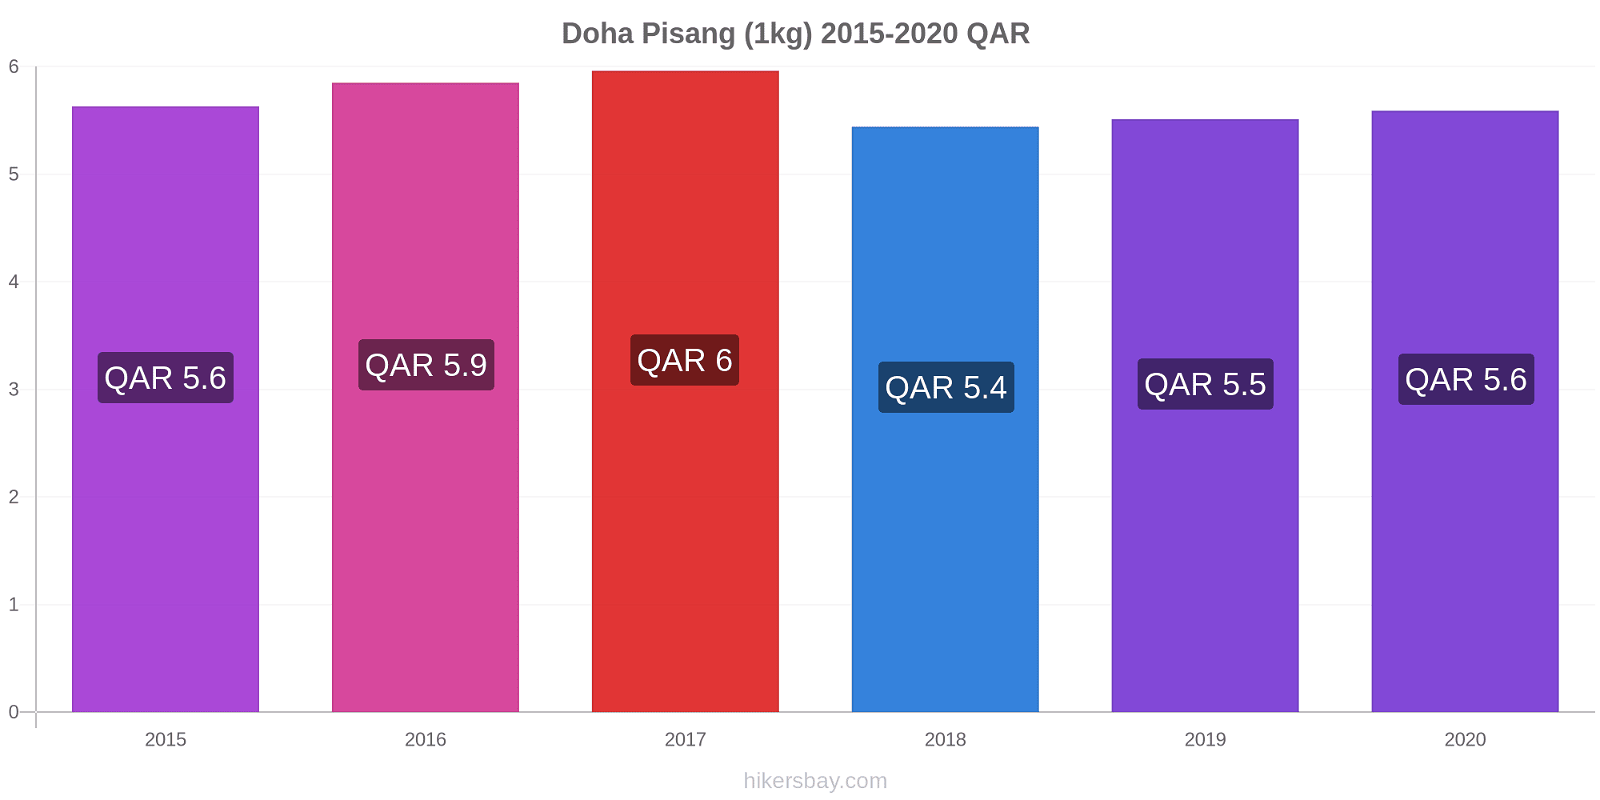 Doha perubahan harga Pisang (1kg) hikersbay.com